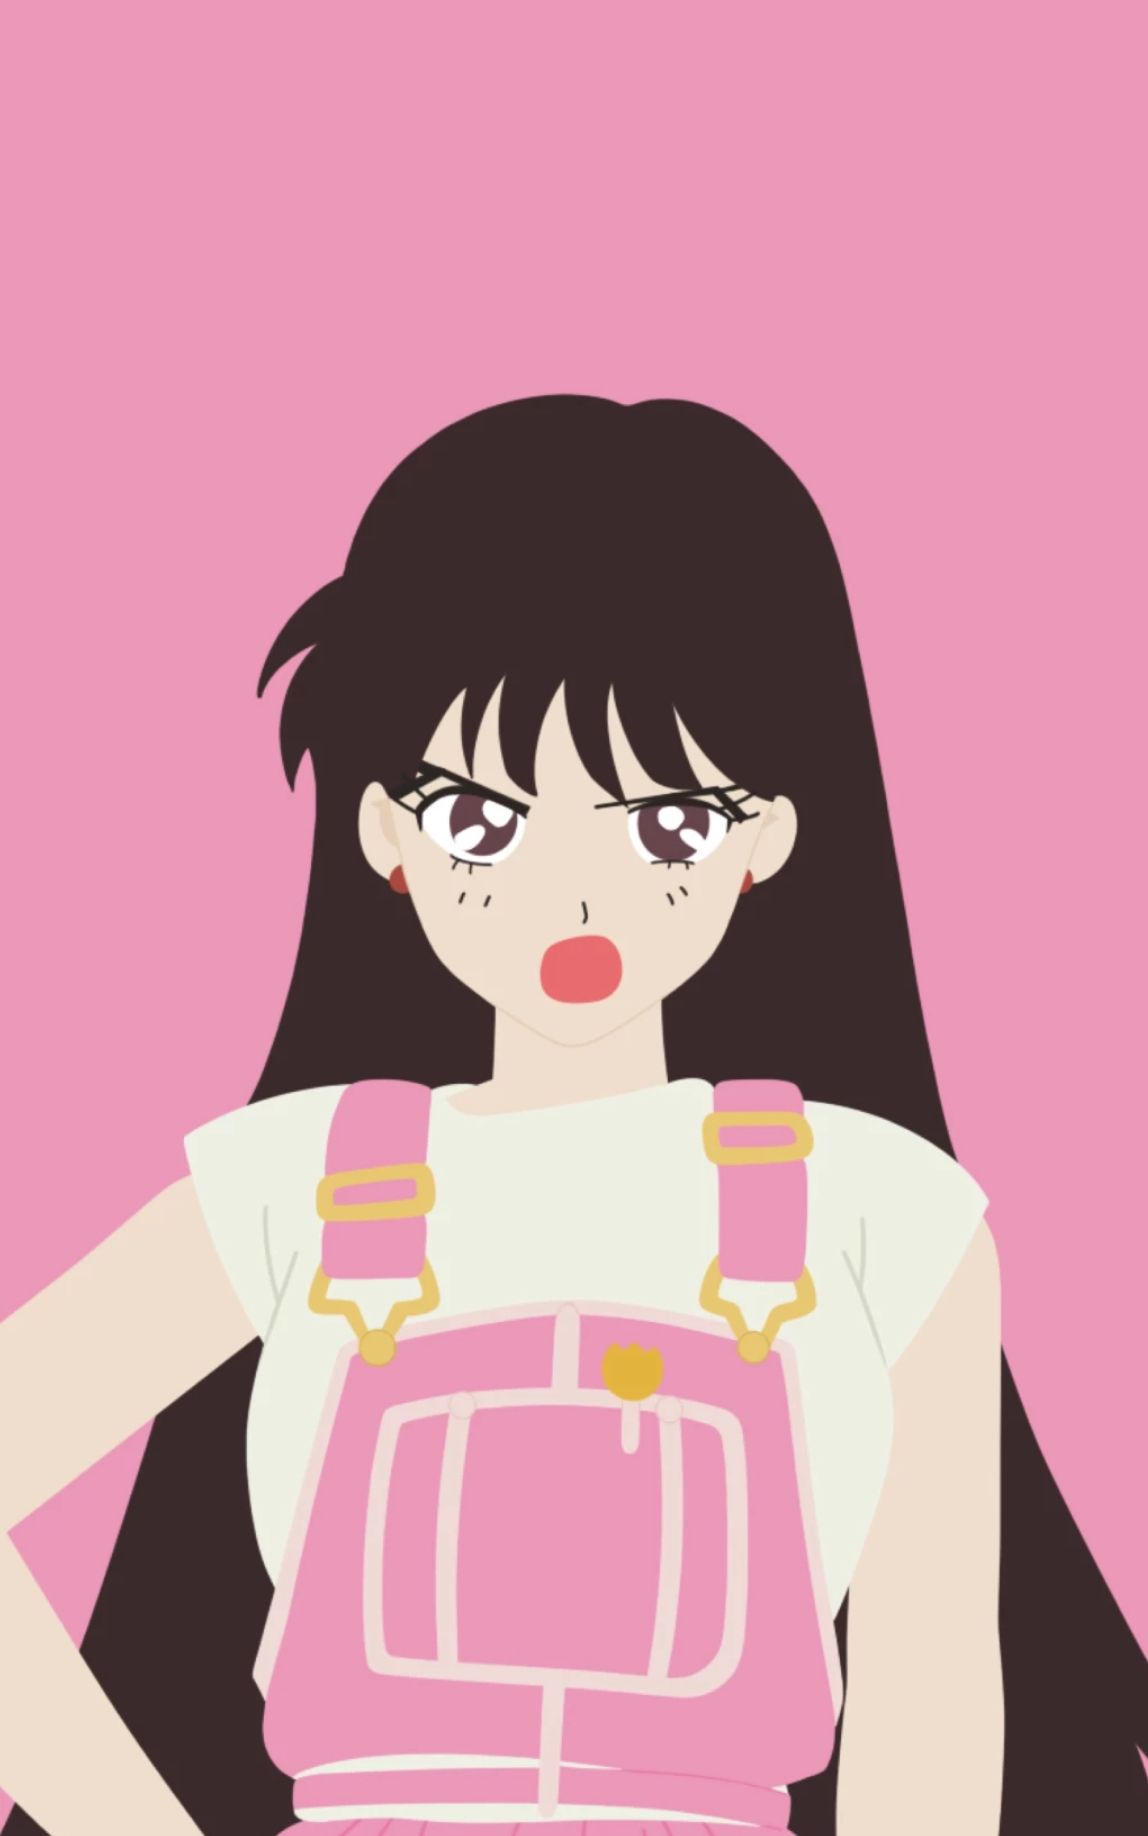 Anime girl pink aesthetic wallpaper for phone or desktop background. - Sailor Mars